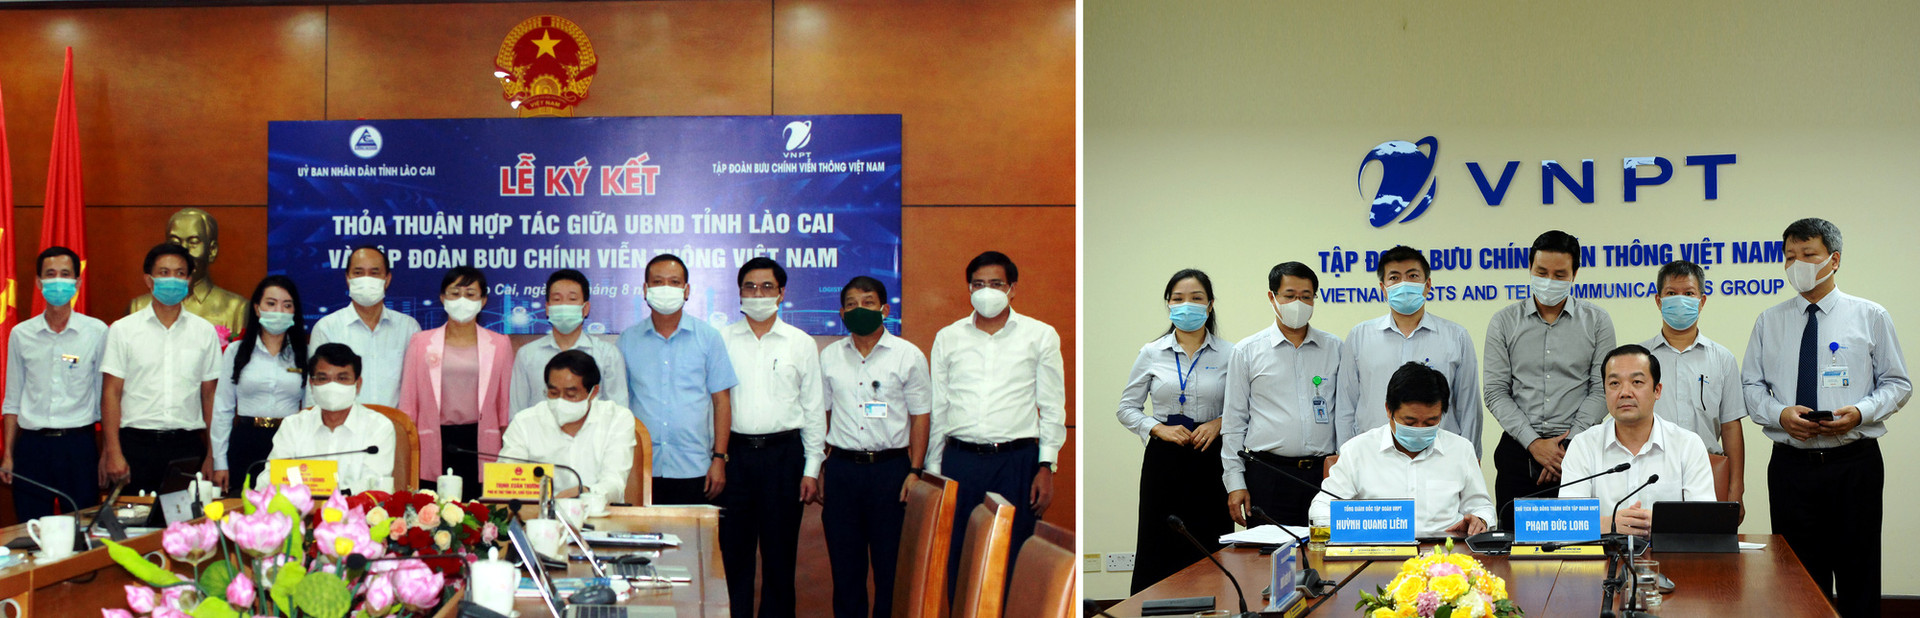 VNPT cùng Lào Cai thúc đẩy Chính quyền điện tử và chuyển đổi số - Ảnh 1.